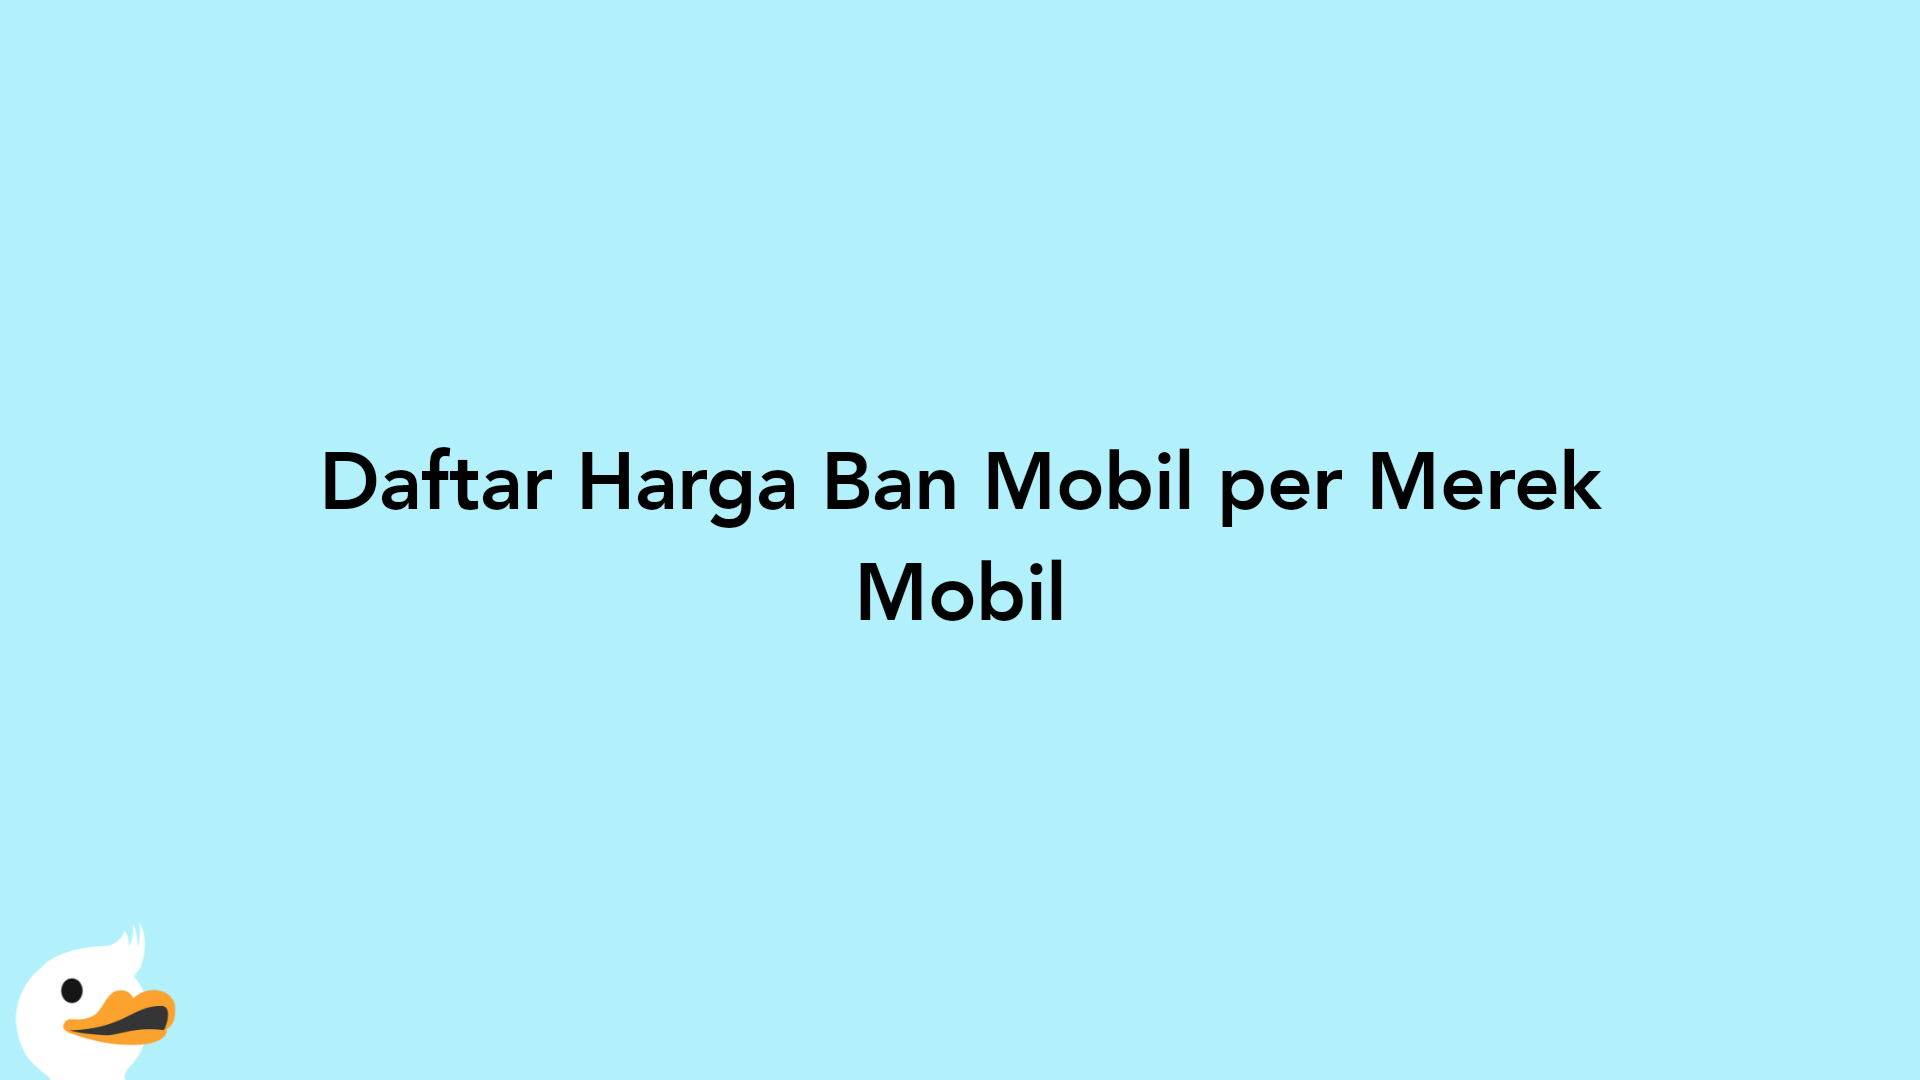 Daftar Harga Ban Mobil per Merek Mobil